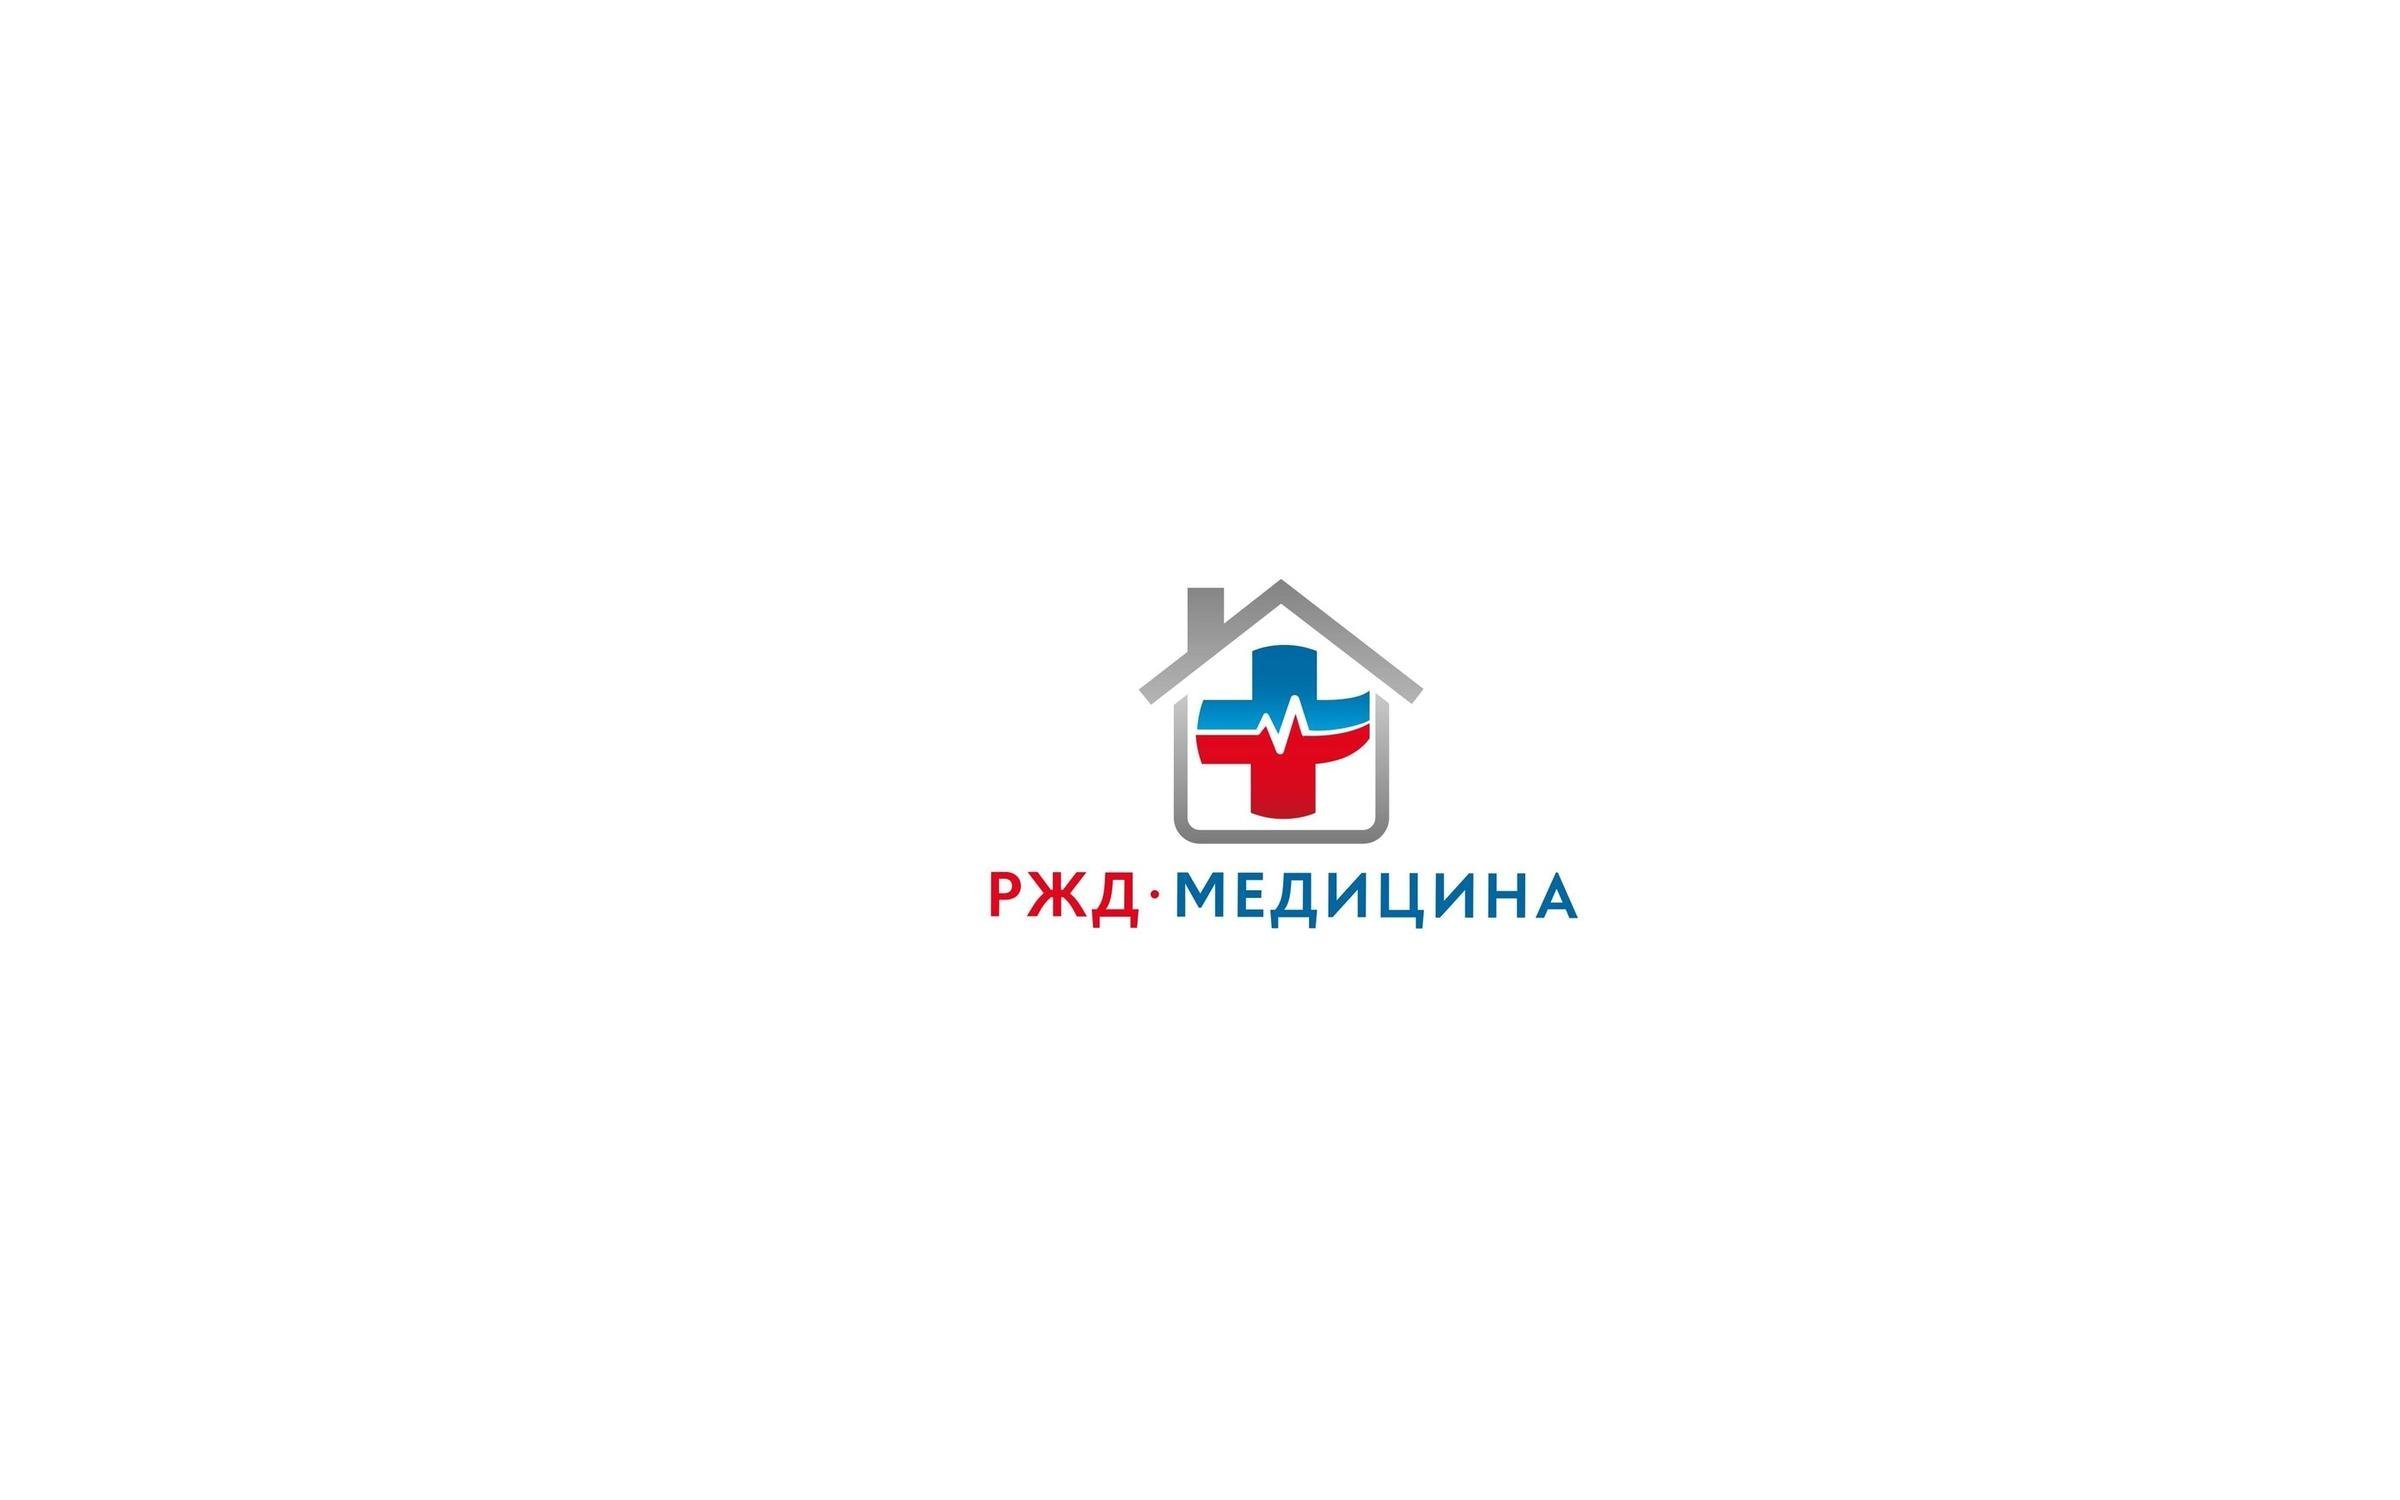 Логотип ржд медицина на прозрачном фоне фото